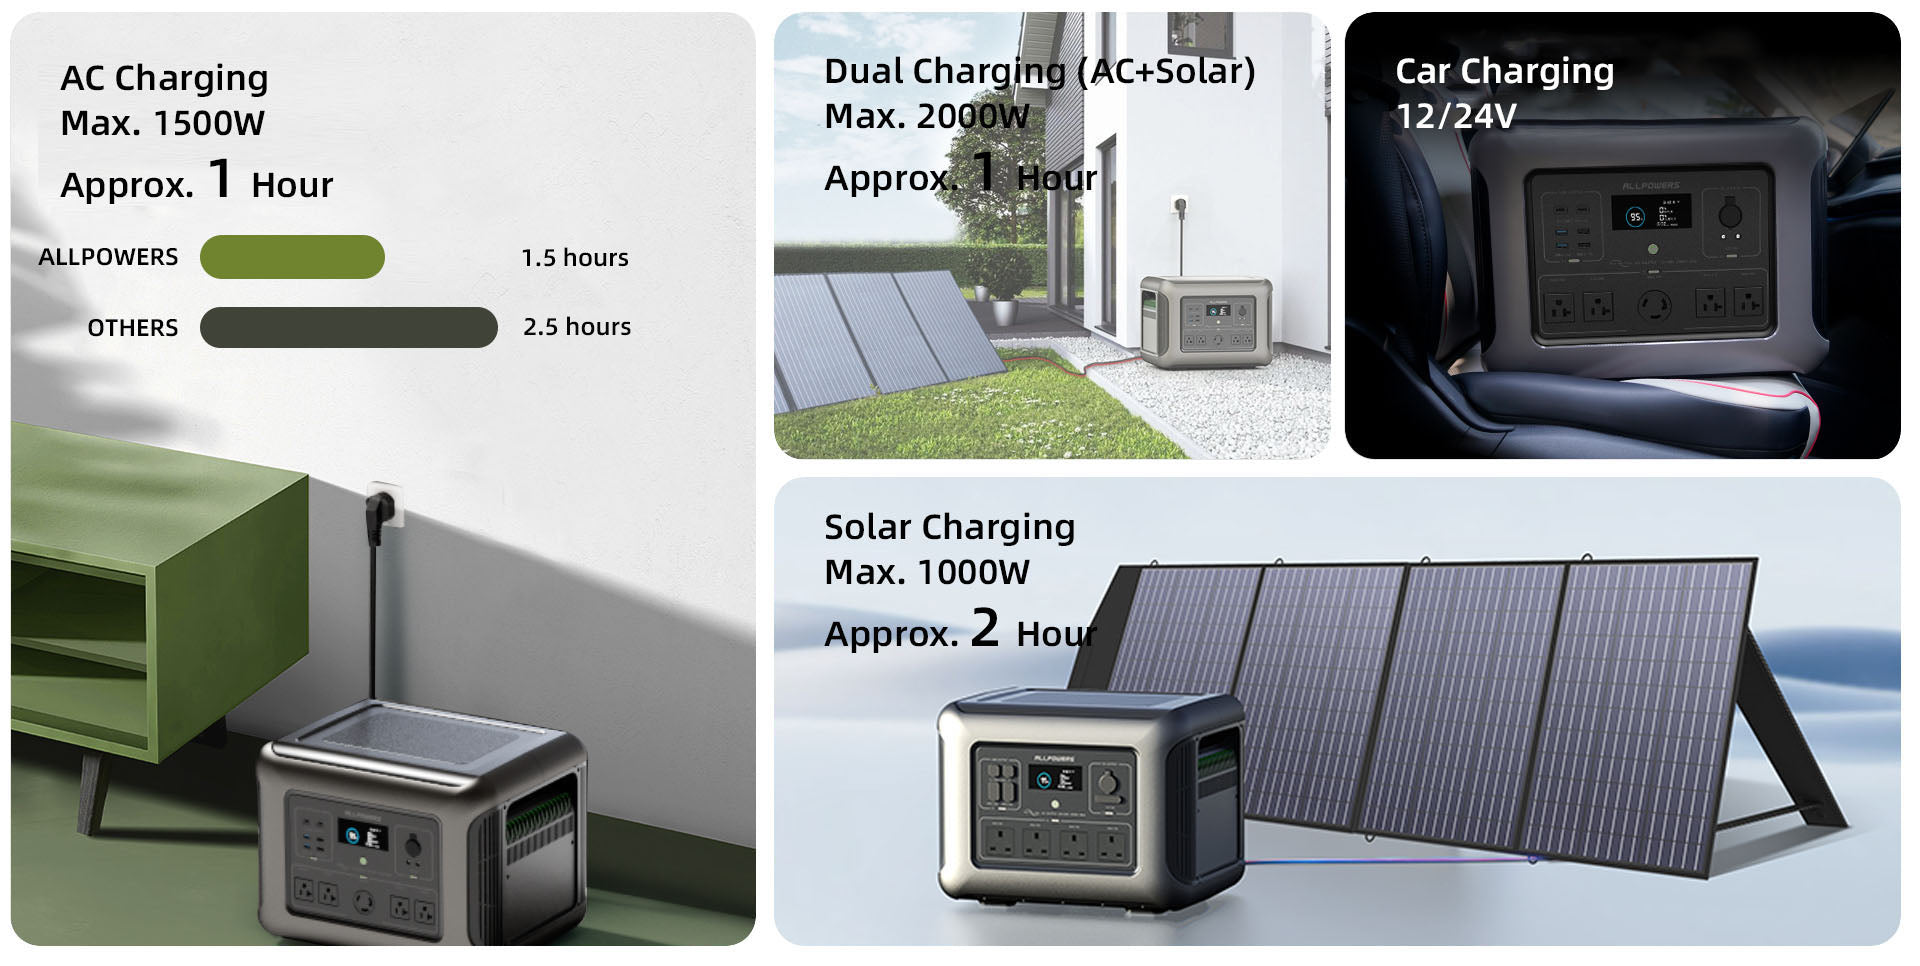 ALLPOWERS Solar Generator Kit 2500W (R2500 + SP037 400W Solar